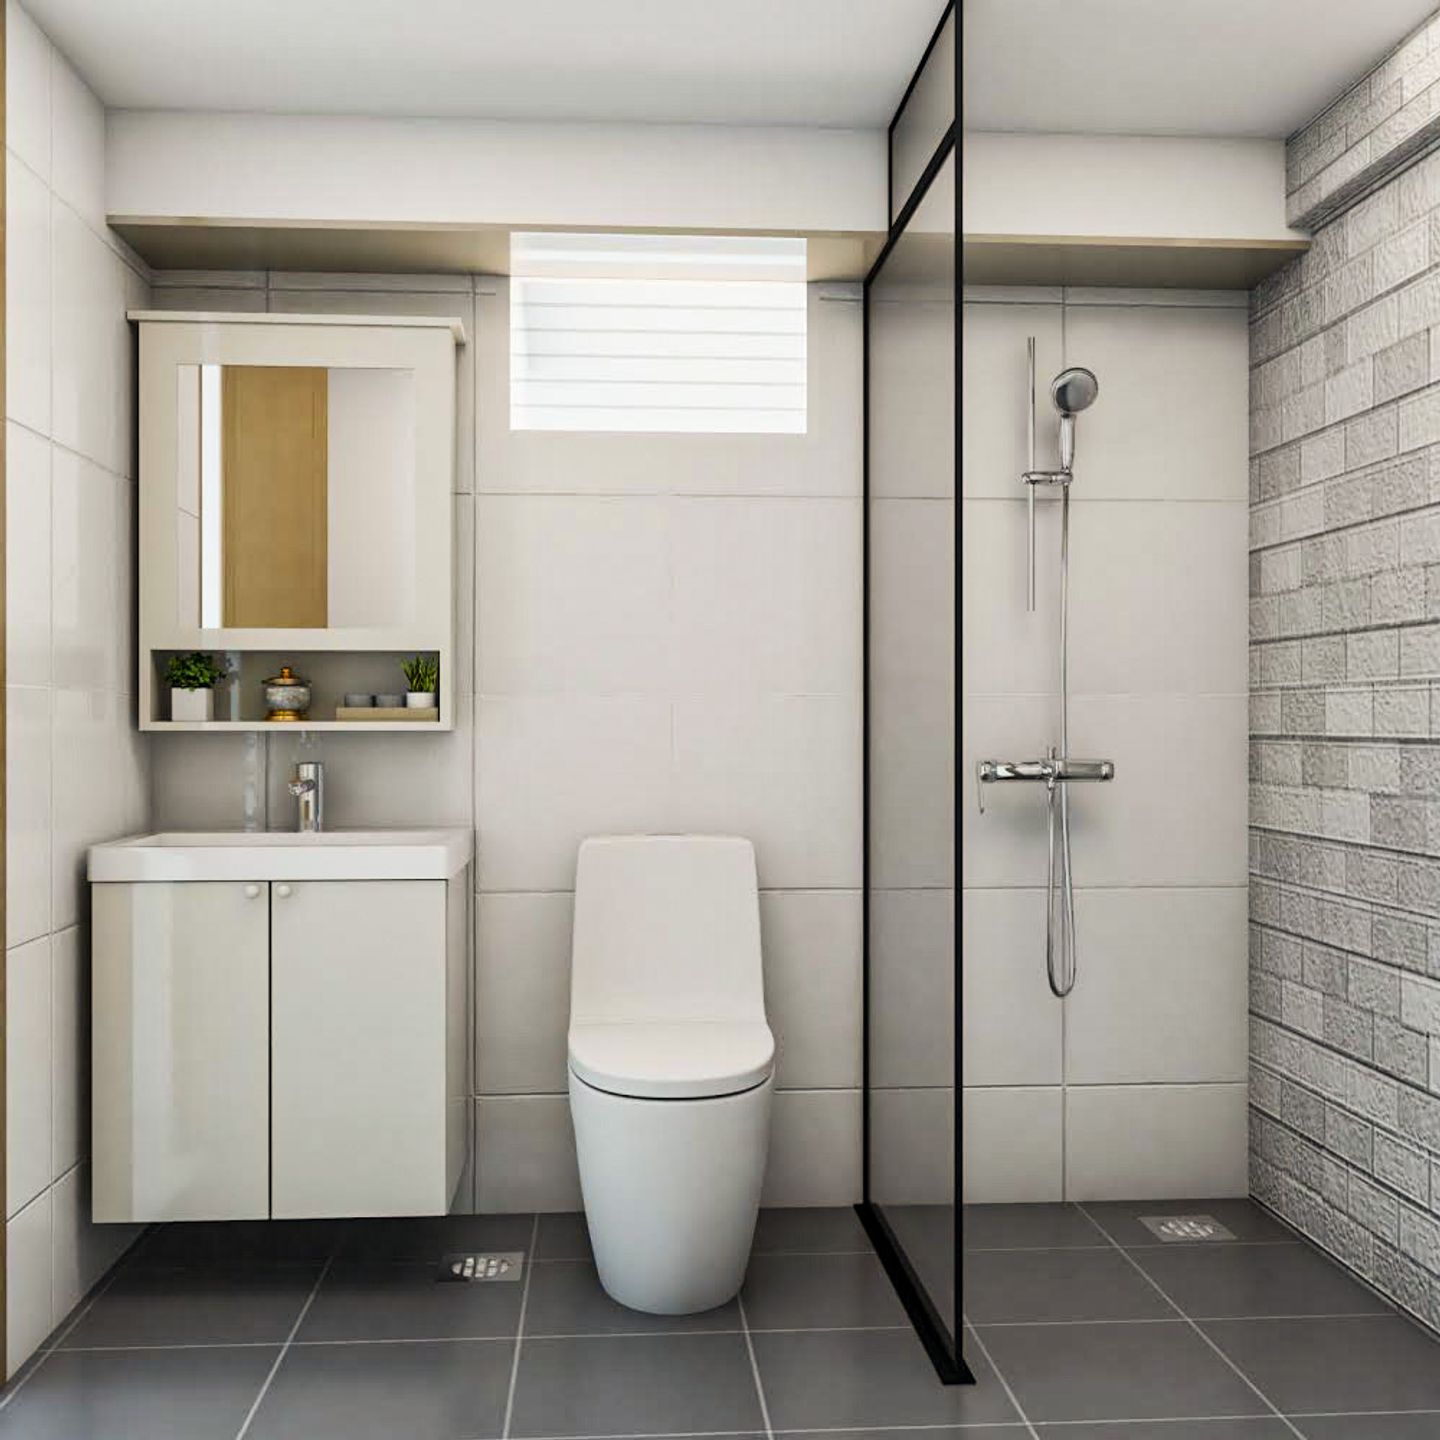 Minimal Bathroom Design With Shutter Storage - Livspace